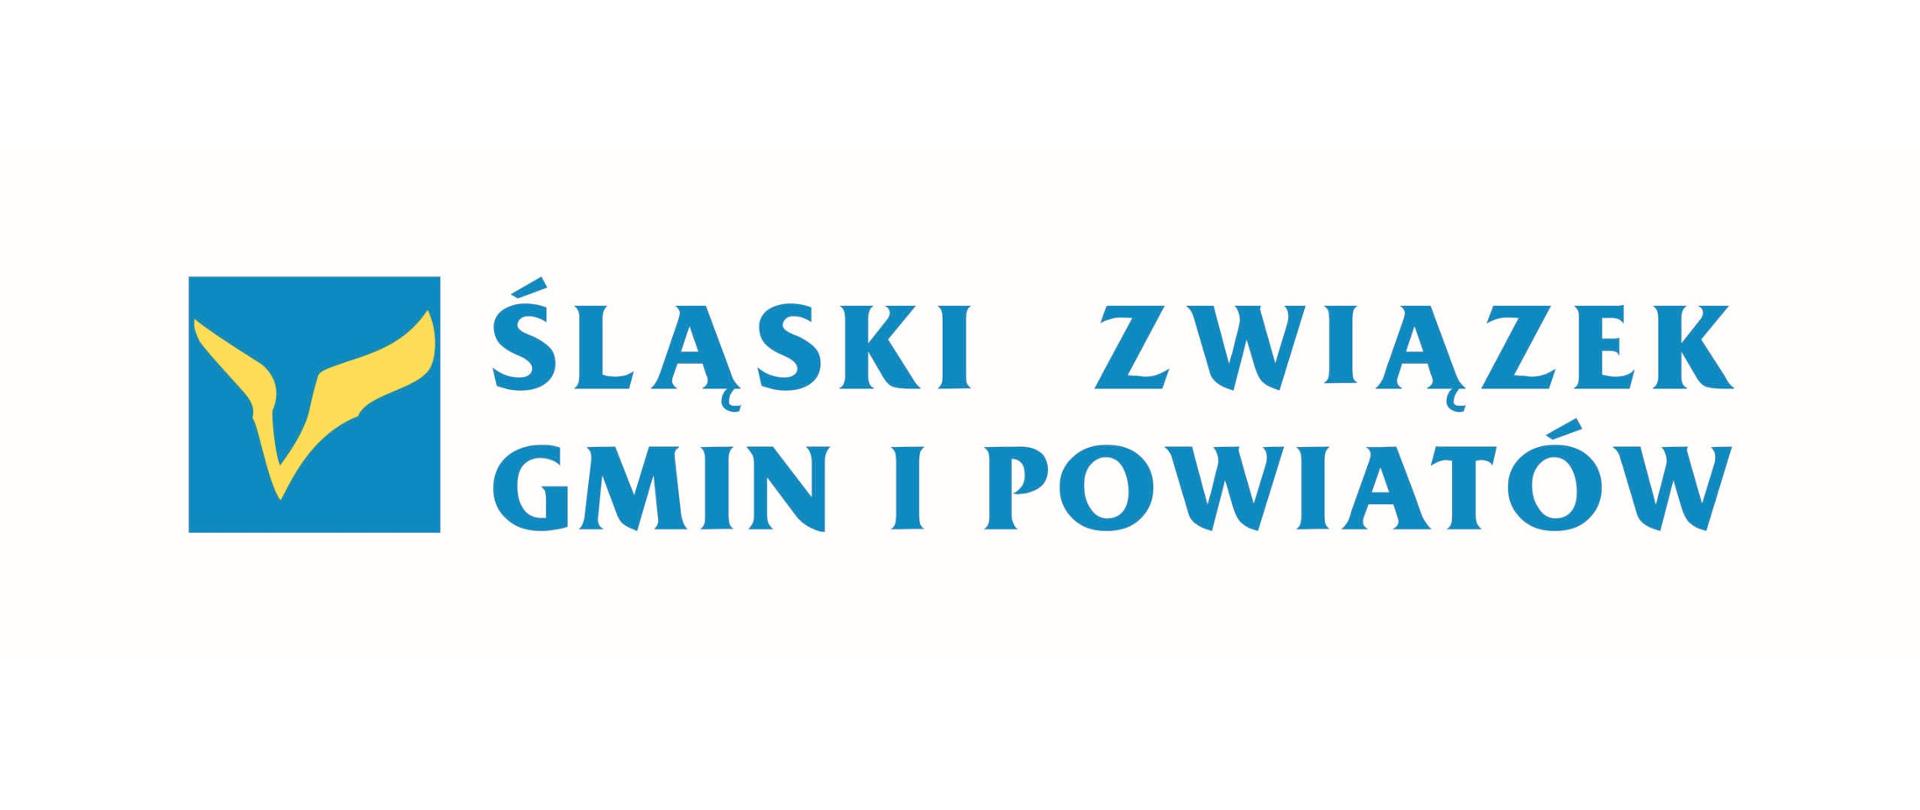 Logo Śląskiego Związku Gmin i Powiatów. Na białym tle niebieski napis dużymi literami Śląskiego Związku Gmin i Powiatów oraz znak graficzny w postaci żółtego symbolu zamkniętego w niebieskim kwadracie